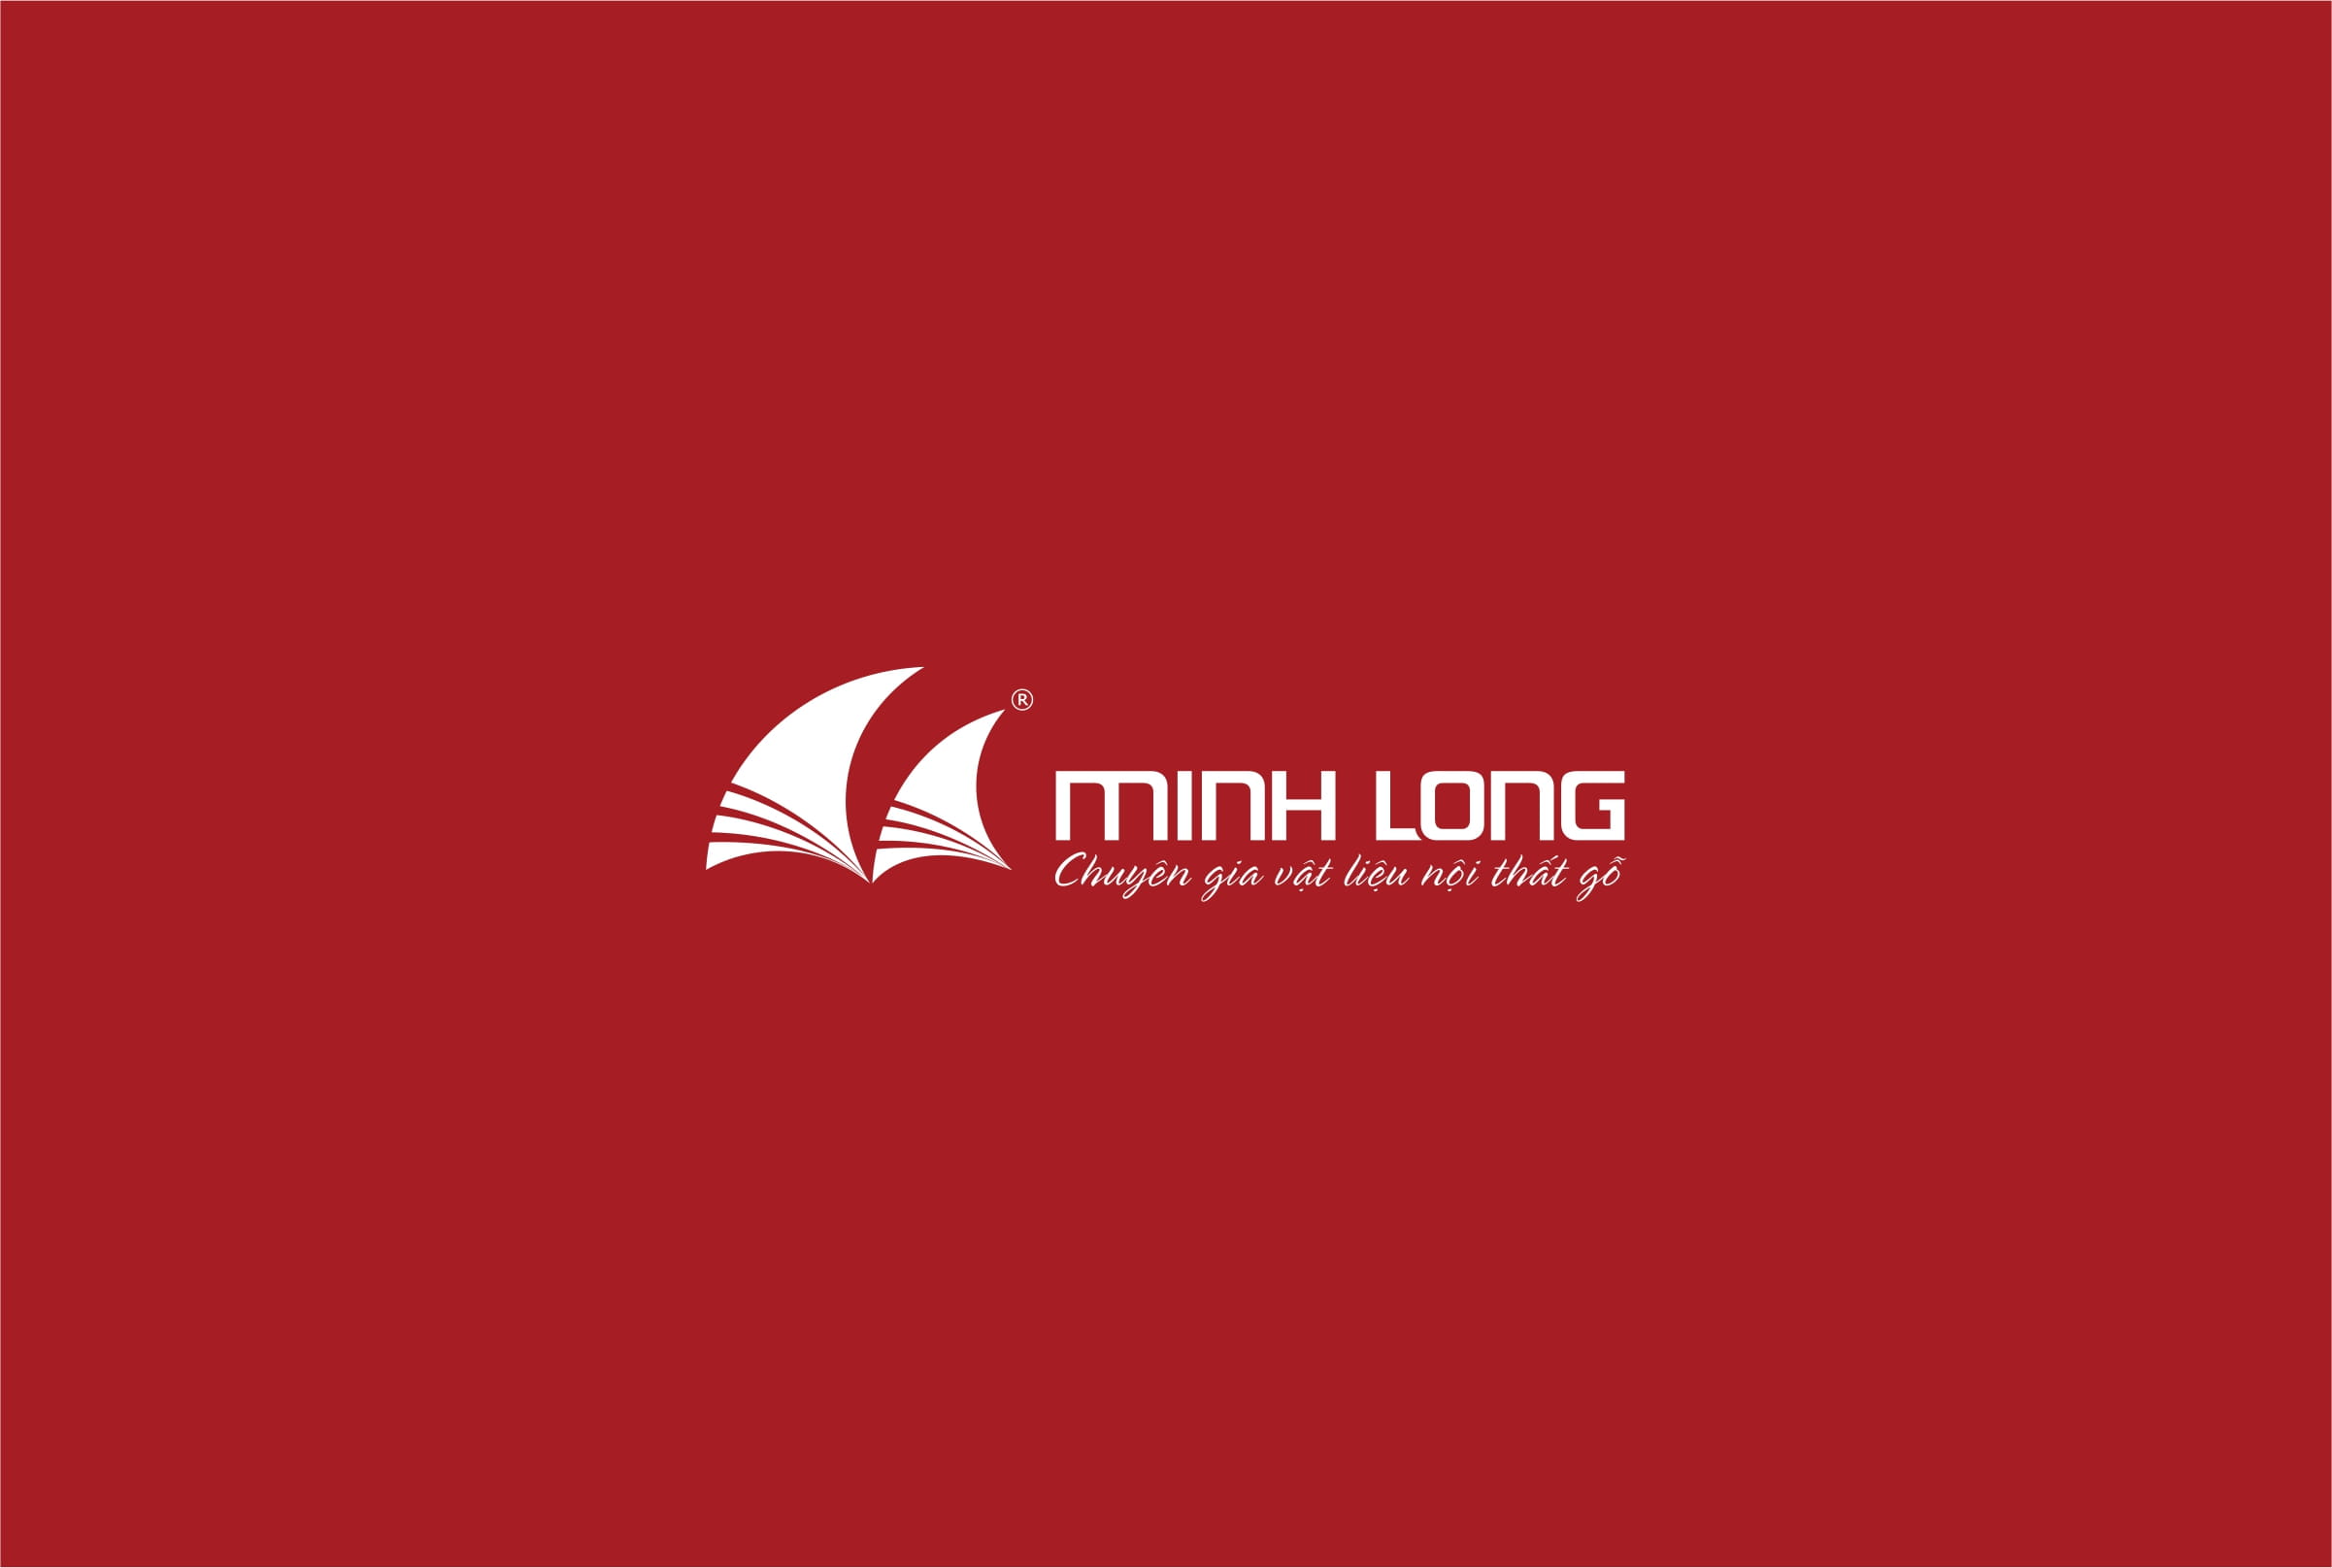 HSNL - Gỗ Minh Long 51